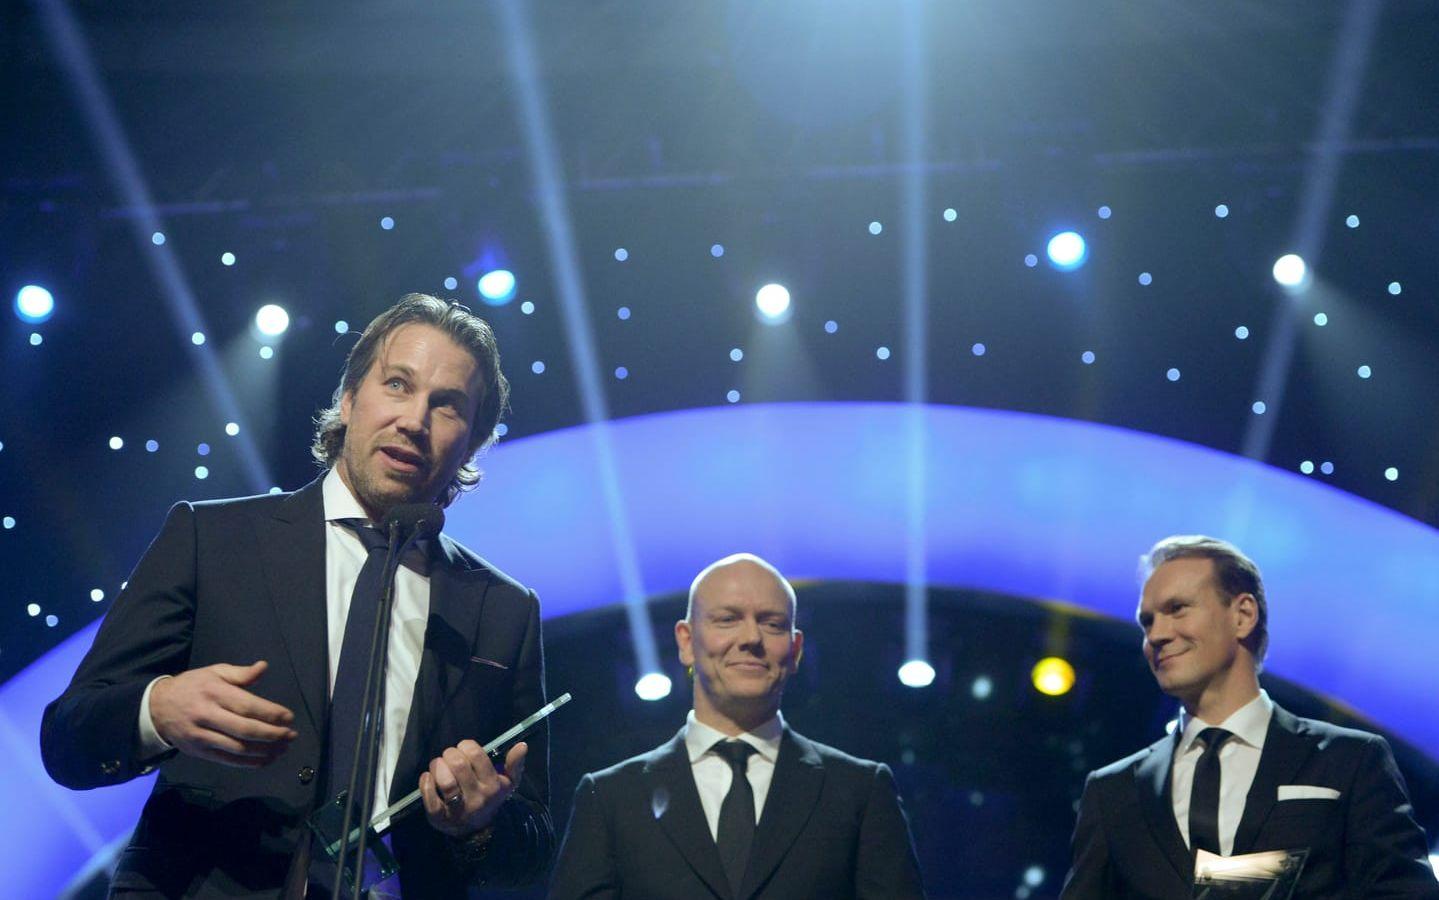 Hyllades på Idrottsgalan tillsammans med Mats Sundin och Niclas Lidström. Bild: TT